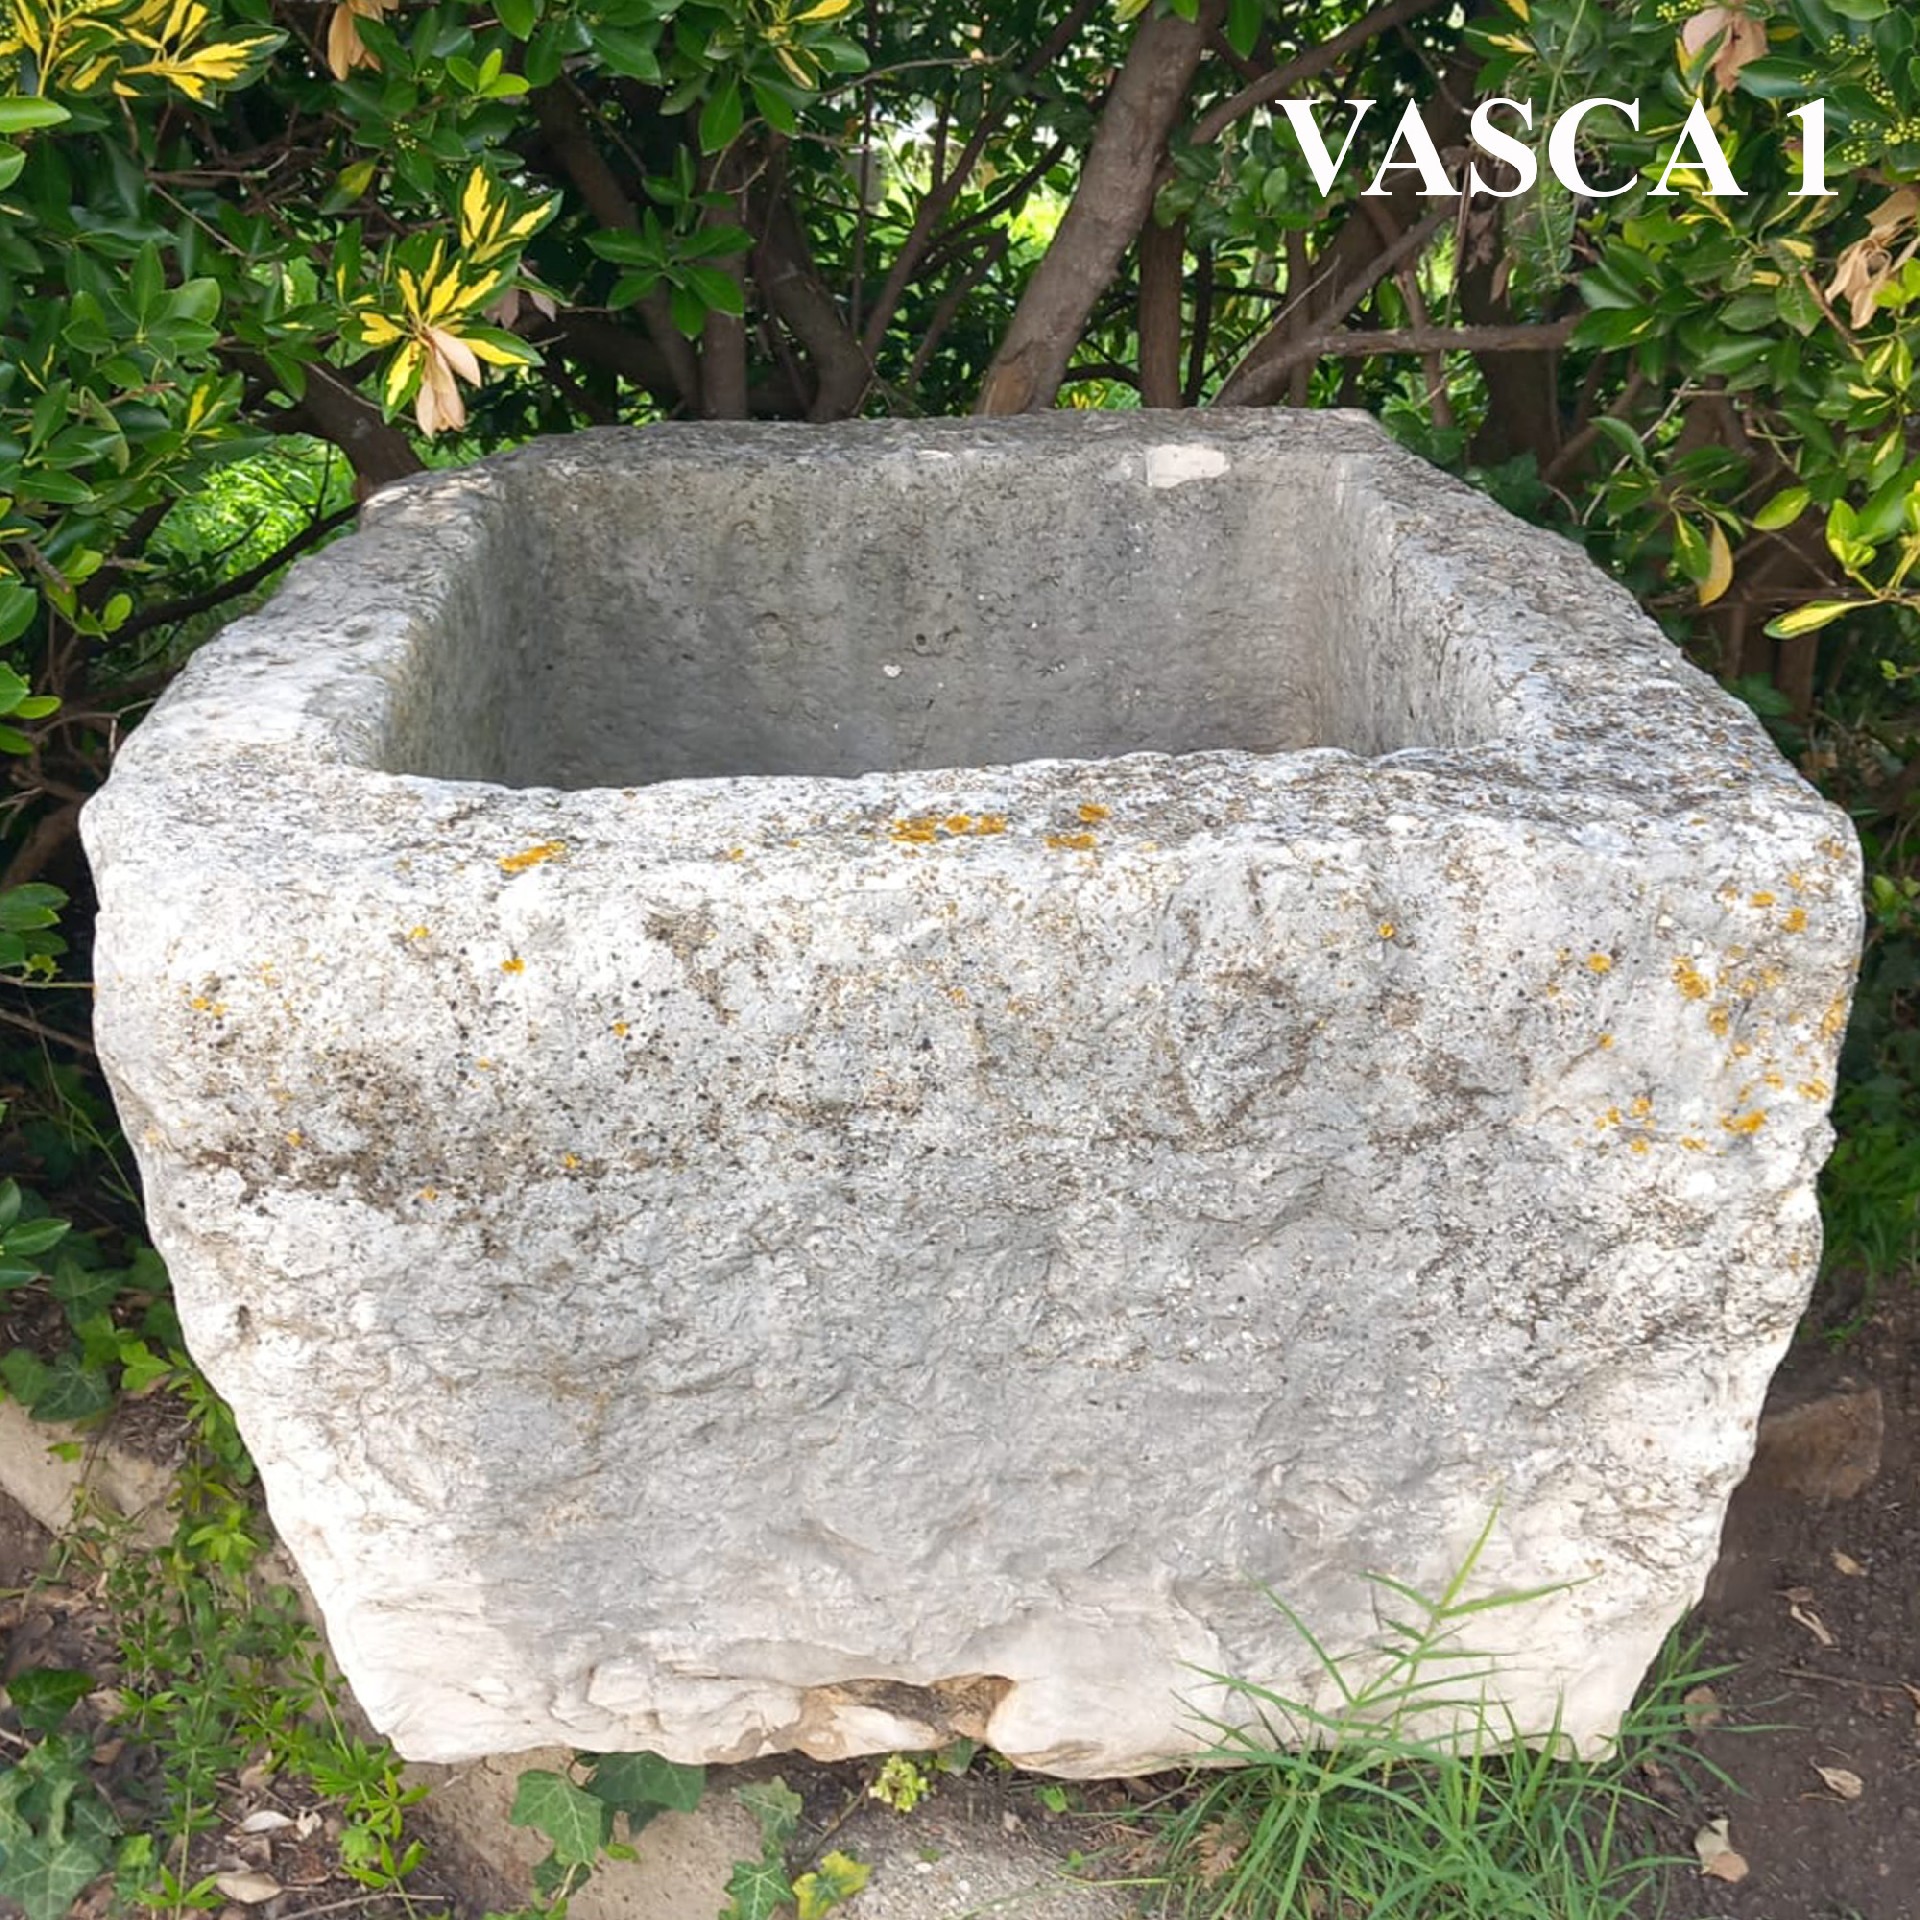 Una di tre antiche vasche in pietra. Epoca 1700. - Vasche - Arredo Giardino - Prodotti - Antichità Fiorillo